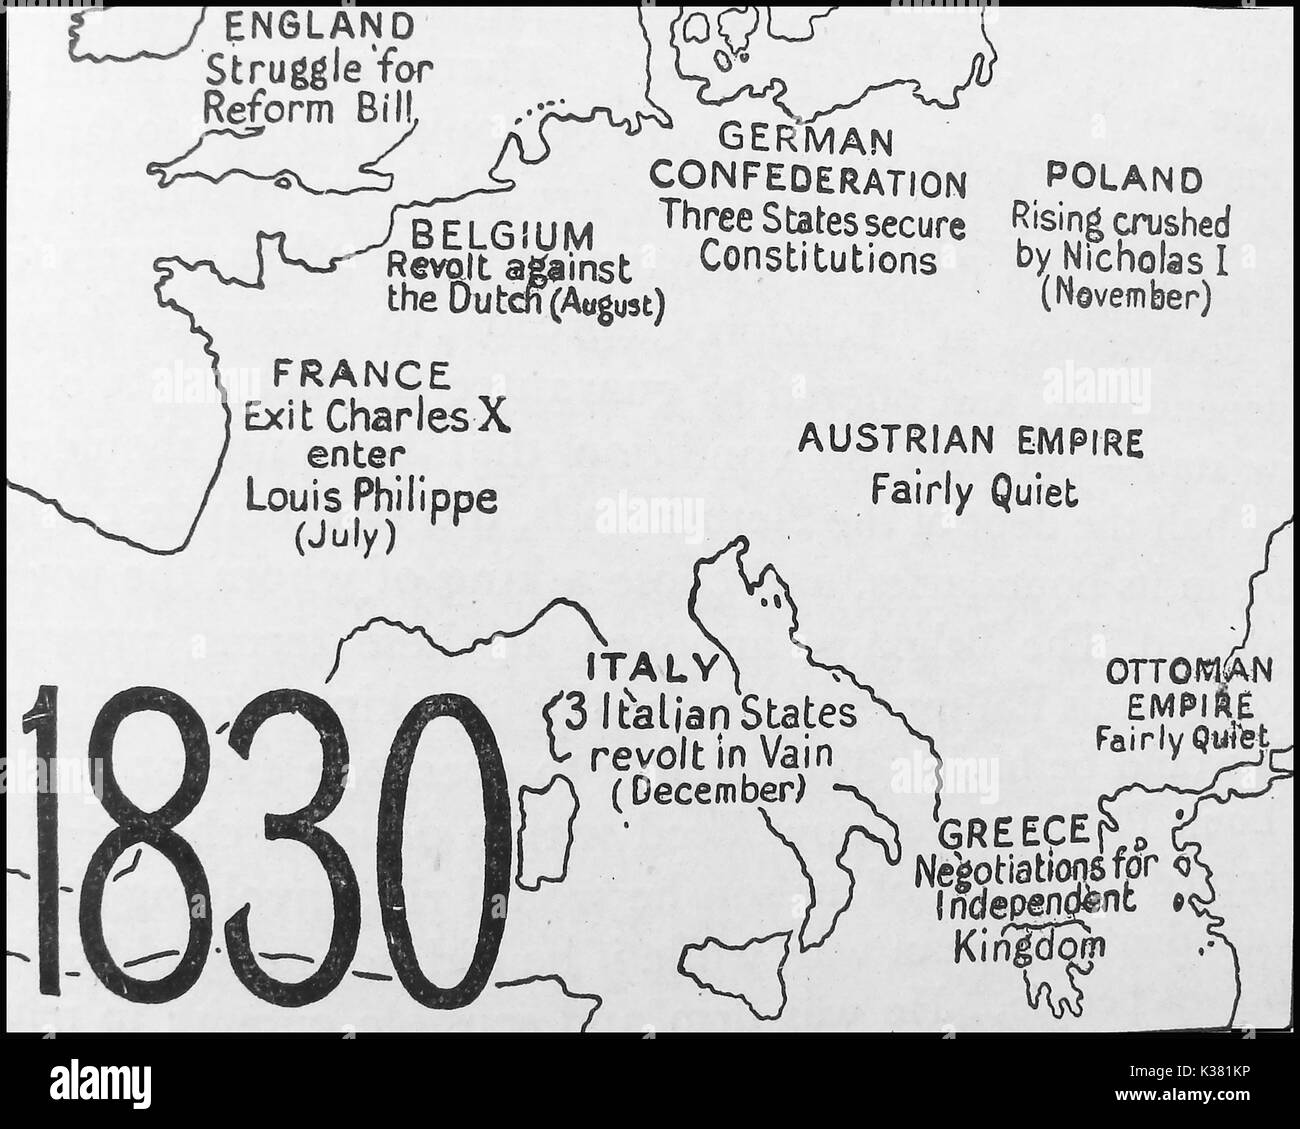 Una mappa di politico che mostra lo stato d'Europa nel 1830 - Inghilterra - Belgio - Francia - confederazione tedesca - Polonia - Impero Austriaco - Italia - Grecia - Impero ottomano Foto Stock